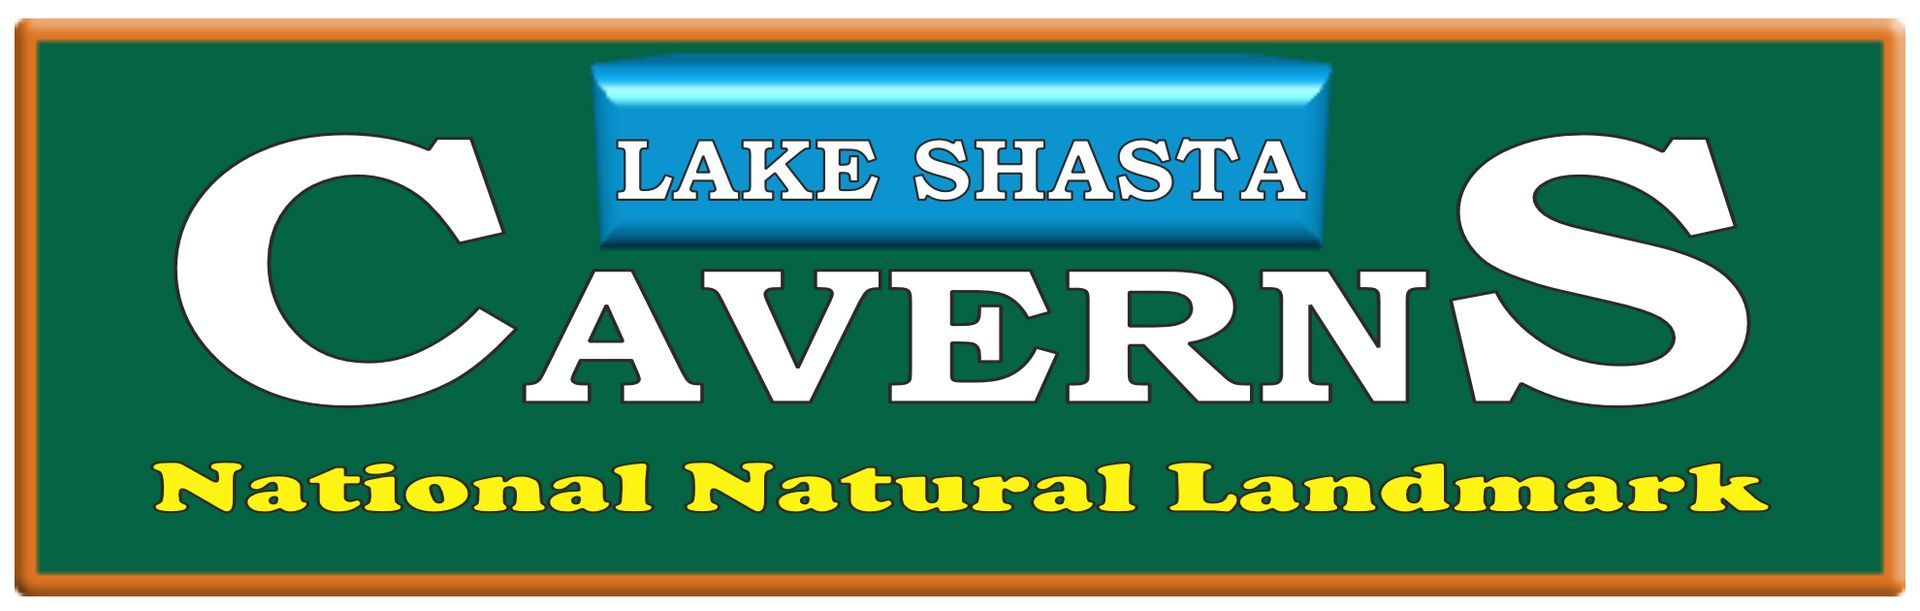 Lake Shasta Caverns logo